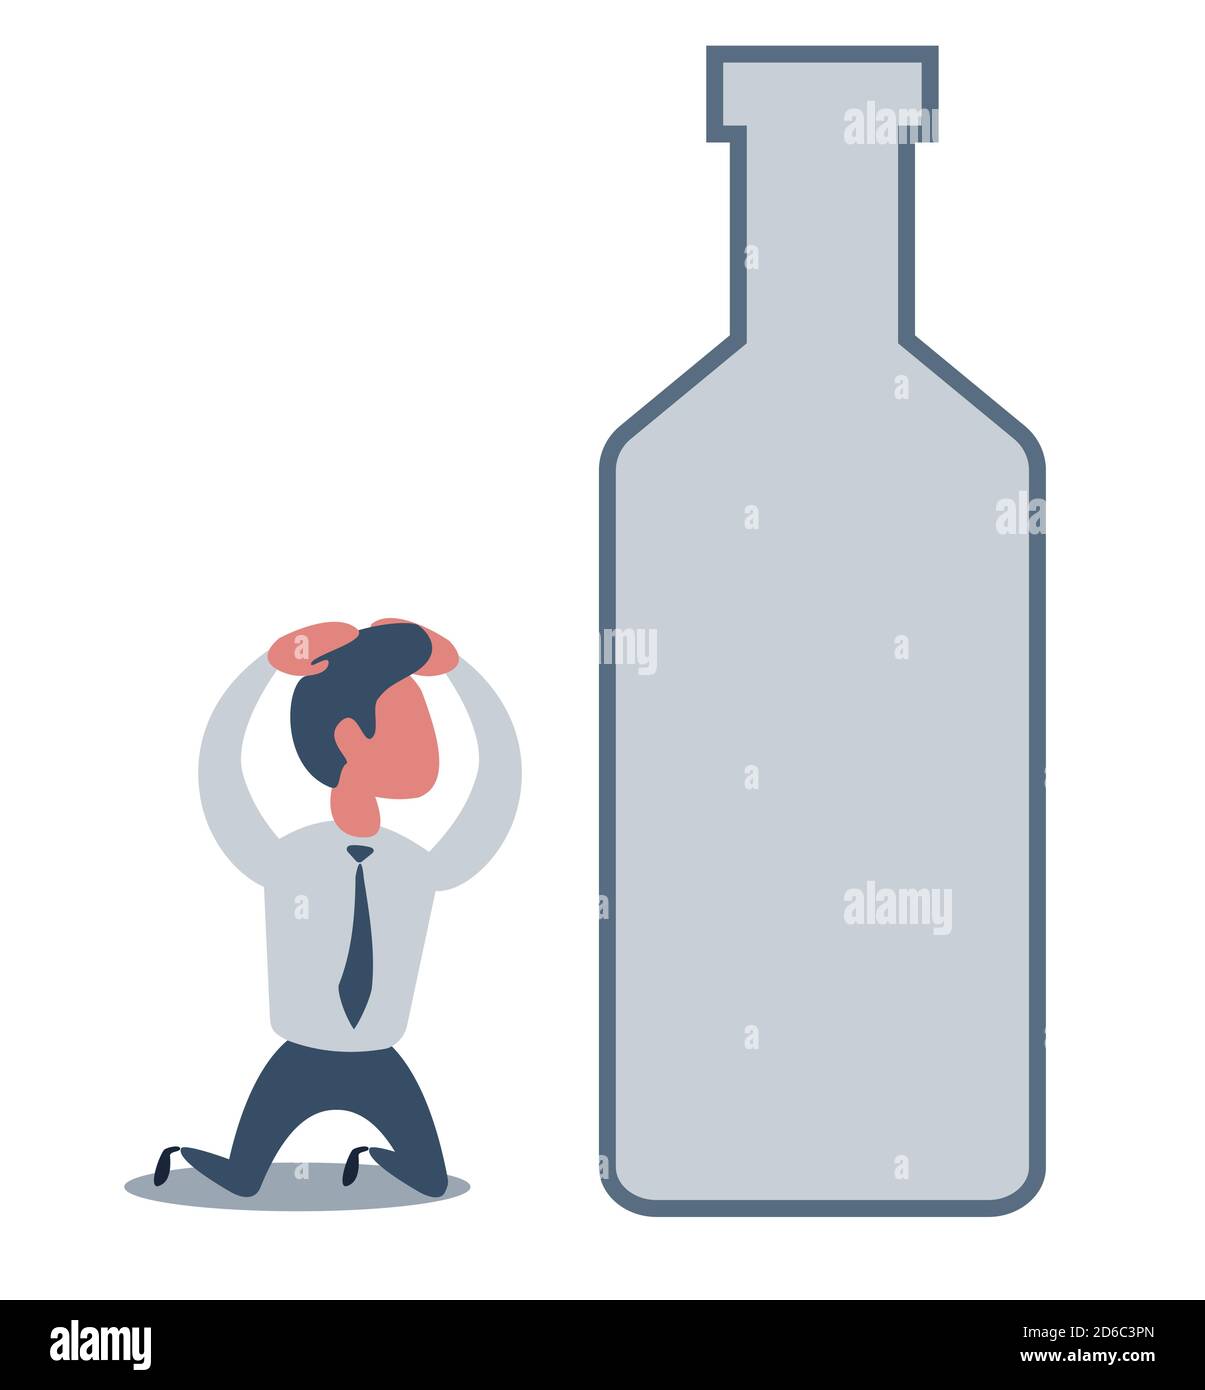 Kranker betrunkener Mann auf den Knien neben der Flasche Wein. Konzept flache Vektor Illustration der Alkoholabhängigkeit. Stock Vektor